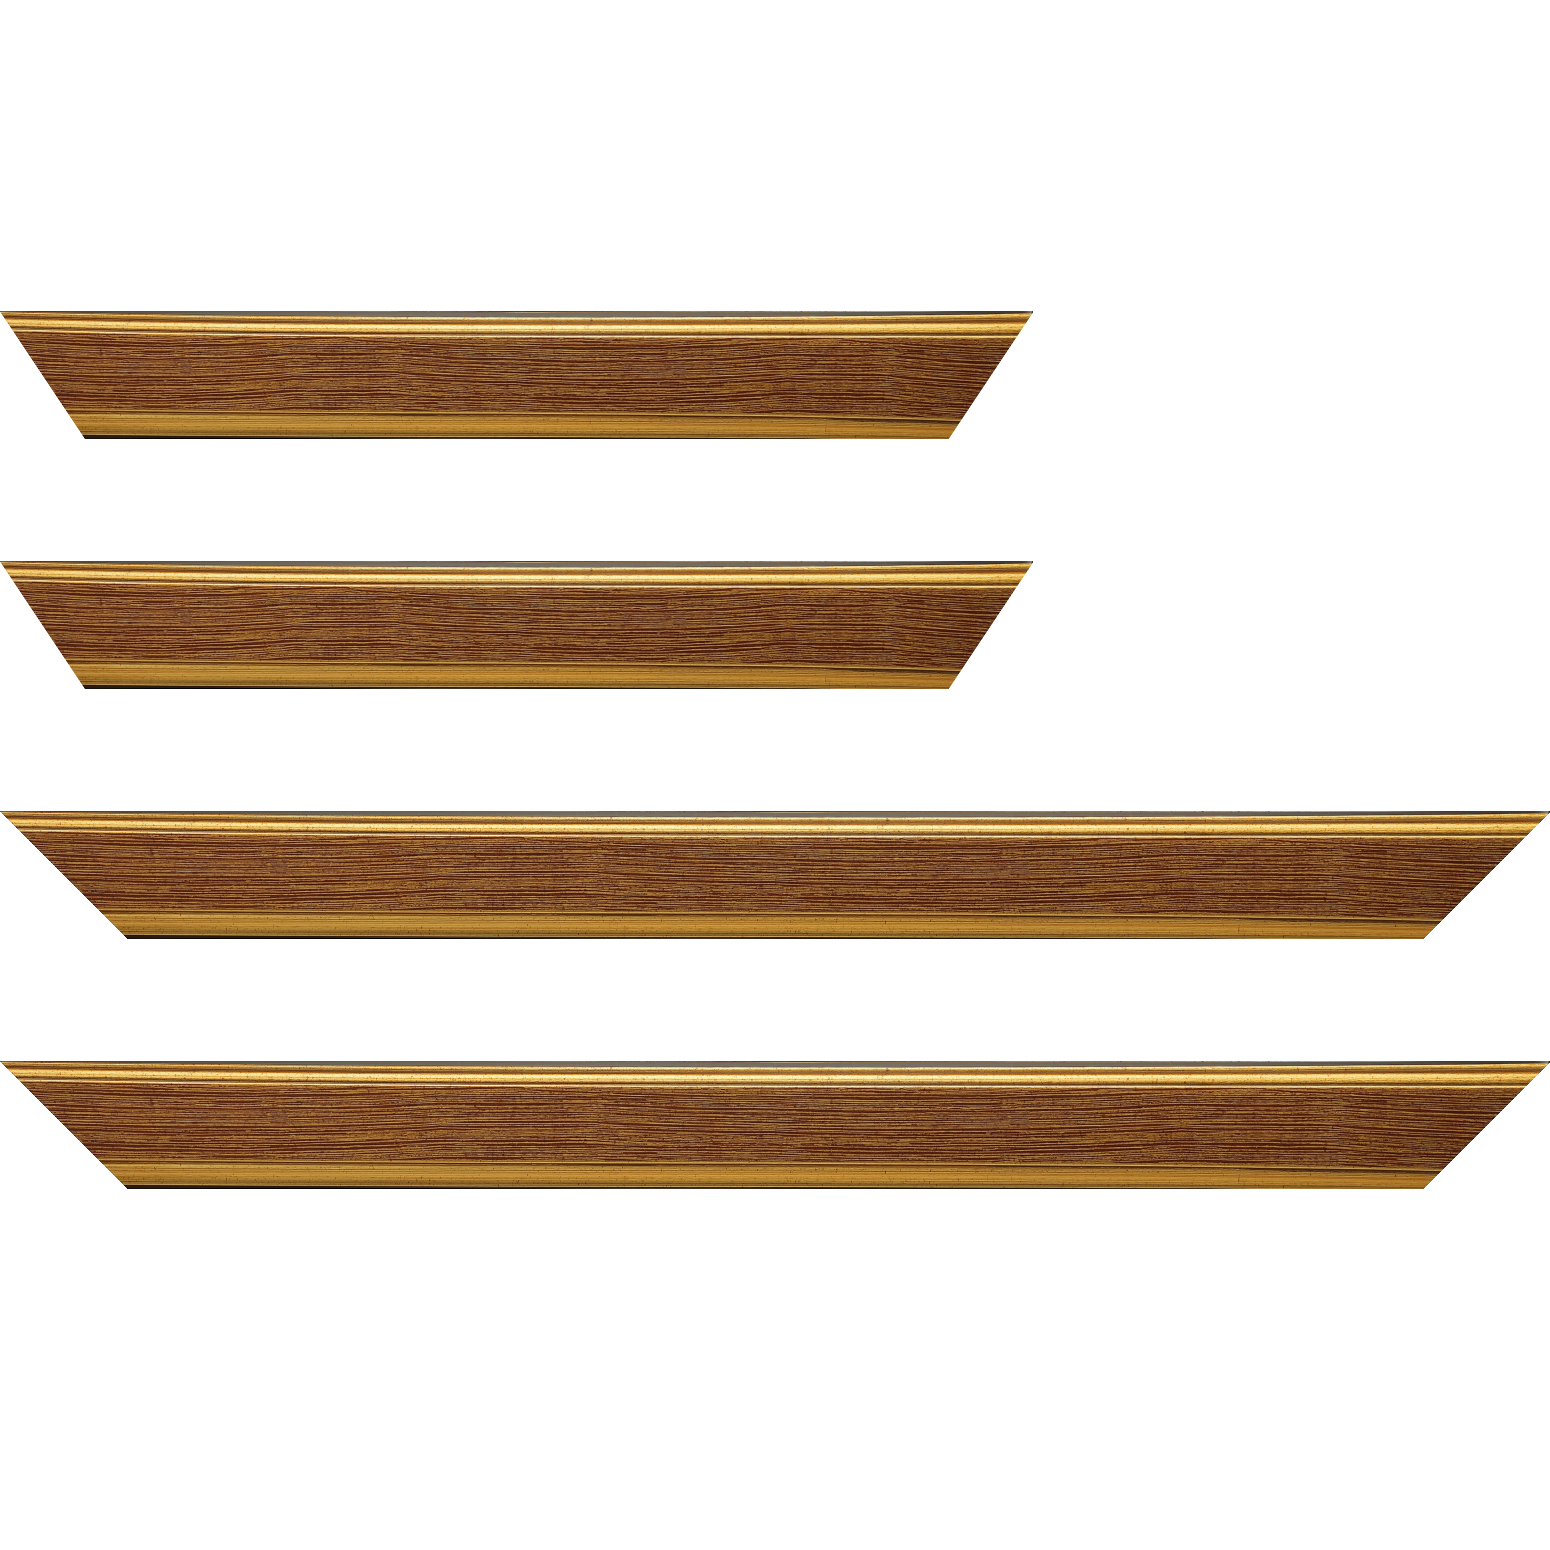 Baguette bois profil plat largeur 3.5cm couleur or fond bordeaux filet or - 30x90